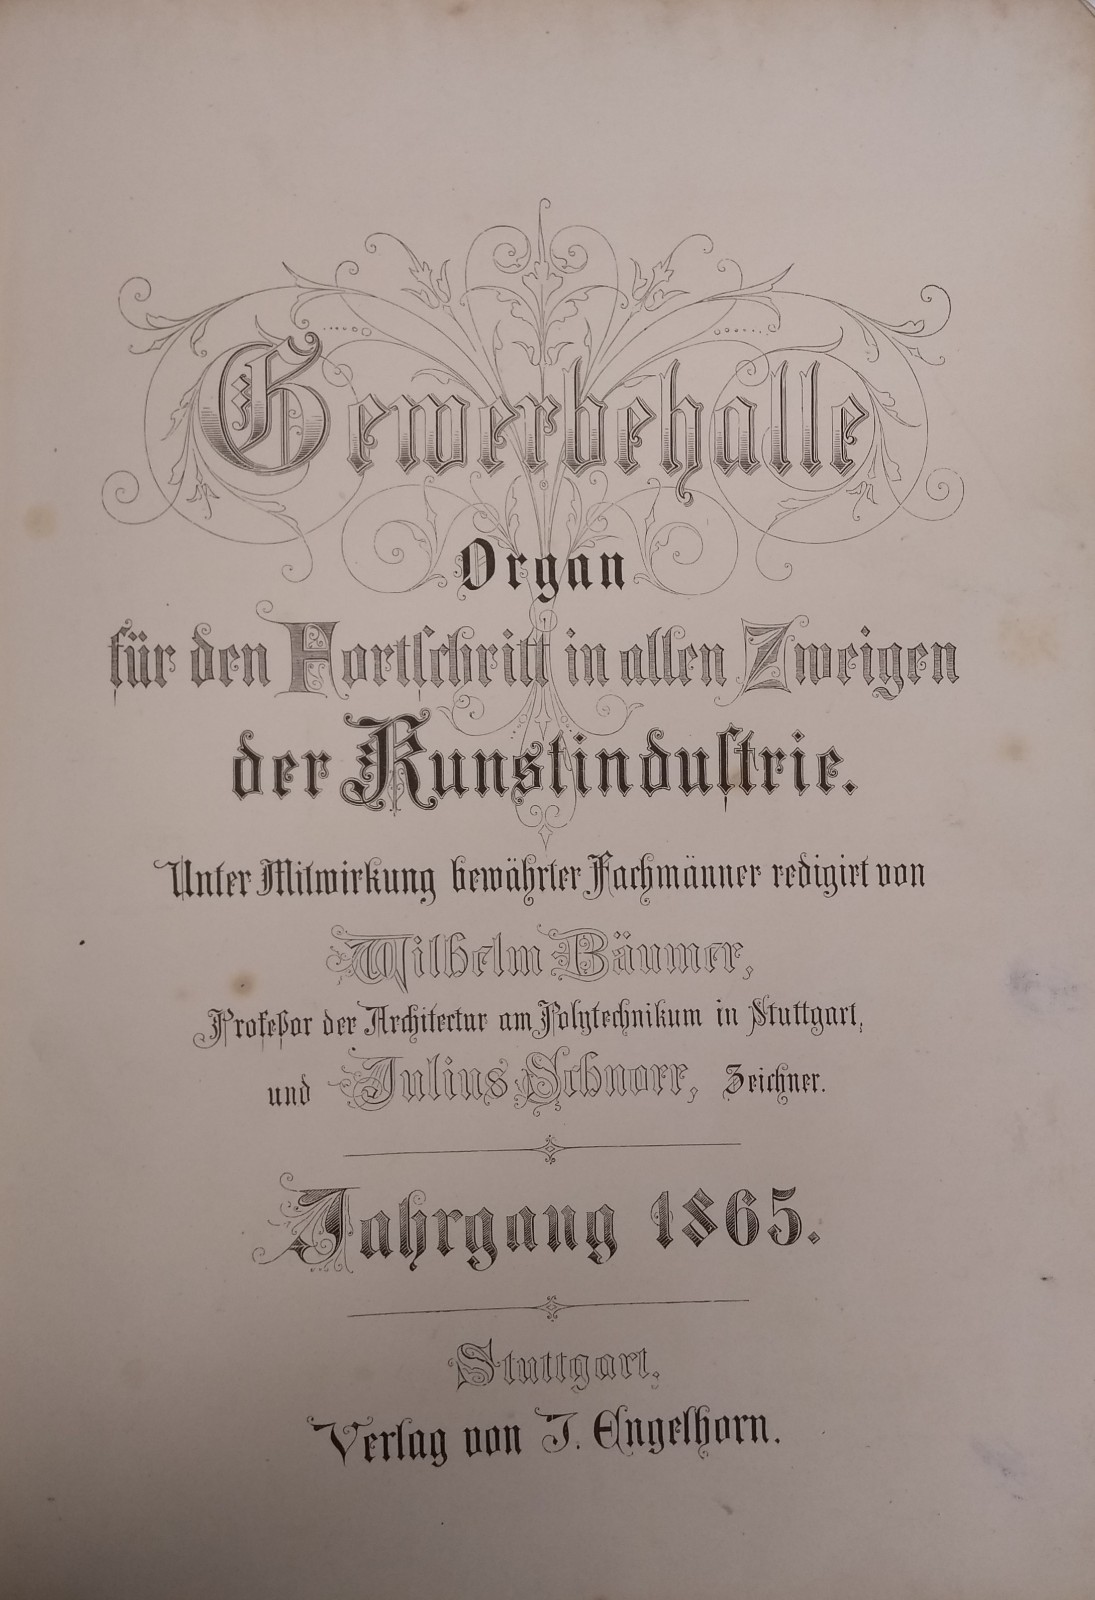 Wilhelm Bäumer, Julius Schnorr Gewerbehalle: Organ für den Furtschritt in allen Zeigen der Kunstindustrie, jahrgang 1865